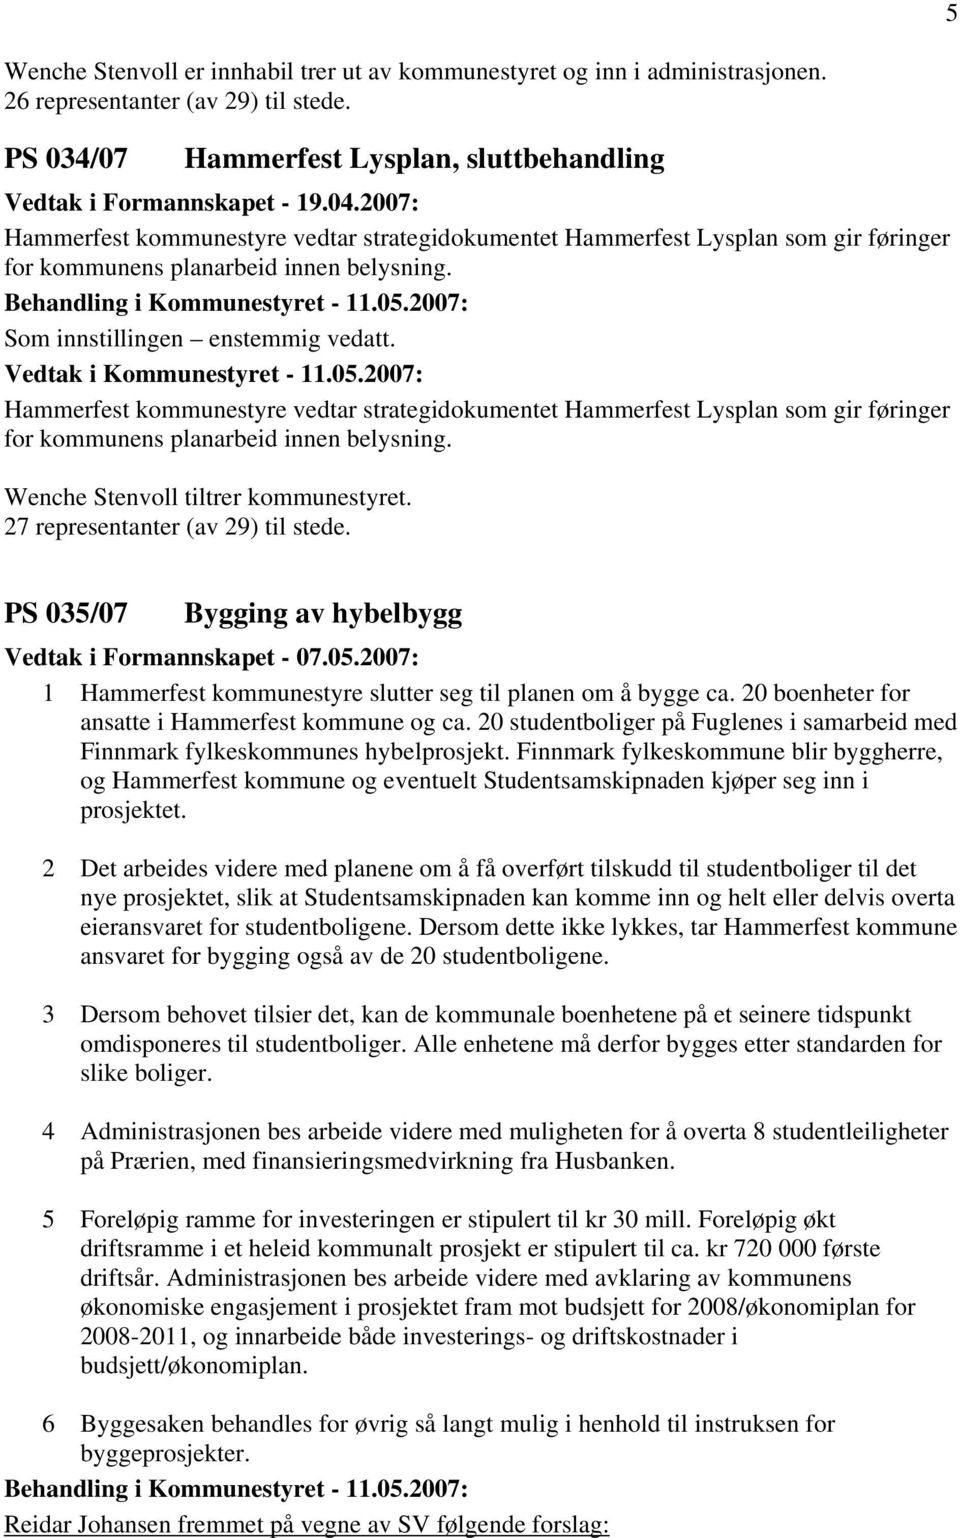 Hammerfest kommunestyre vedtar strategidokumentet Hammerfest Lysplan som gir føringer for kommunens planarbeid innen belysning. Wenche Stenvoll tiltrer kommunestyret.